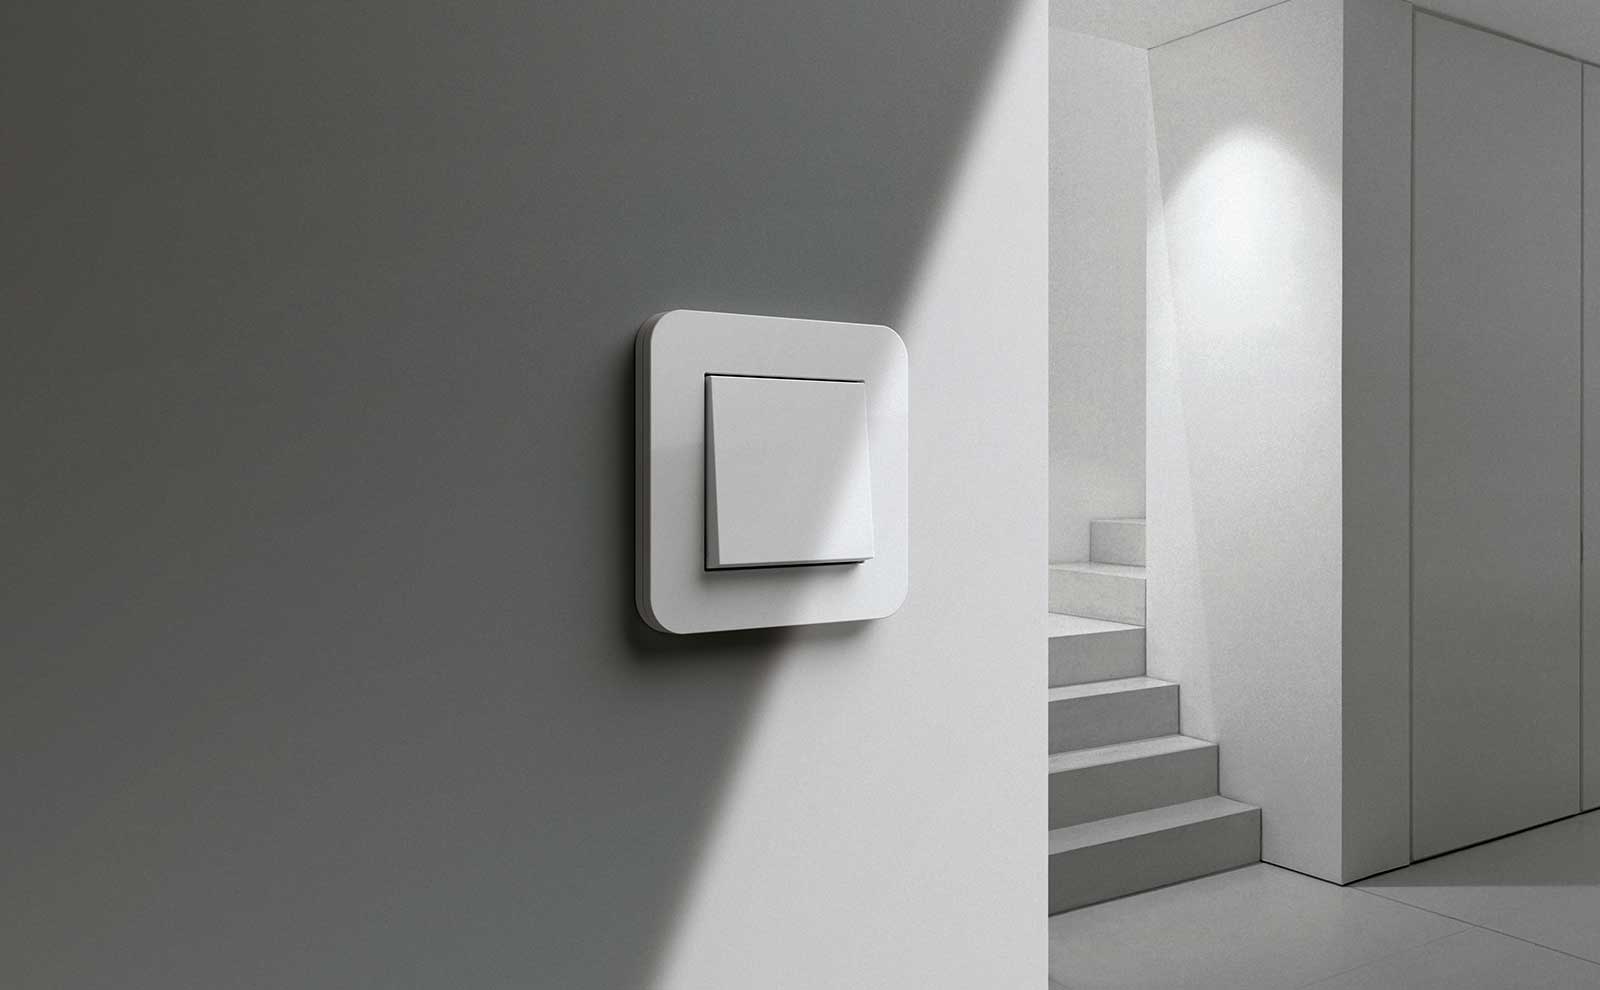 Der individuelle Lichtschalter für Ihr Zuhause. ✓Farben und Materialien frei wählbar ✓Preisgekrönte Designs ✓Mit Dimmfunktion